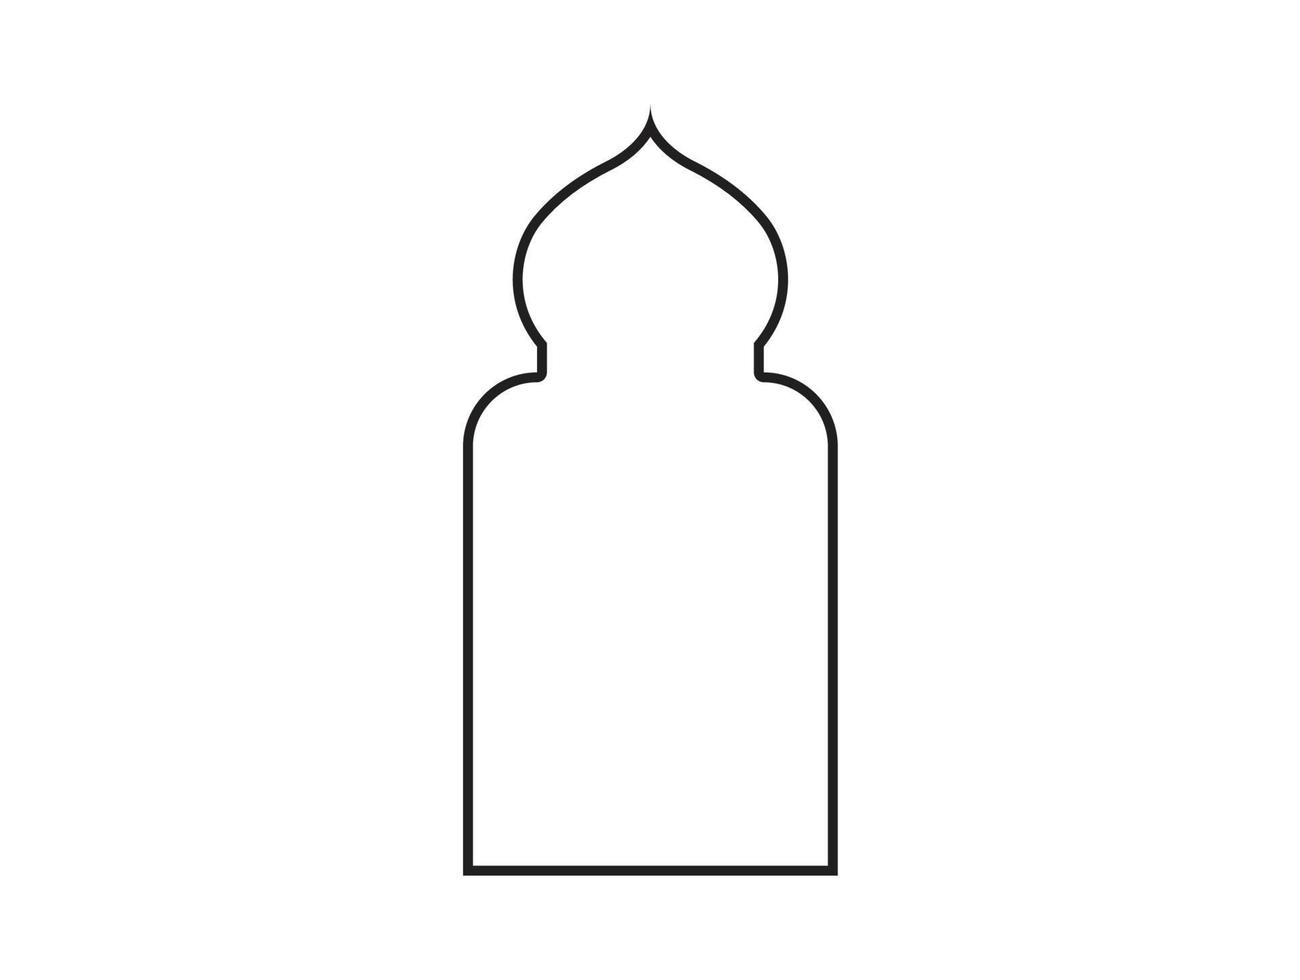 símbolo árabe da janela e das portas do arco islâmico isolado vetor